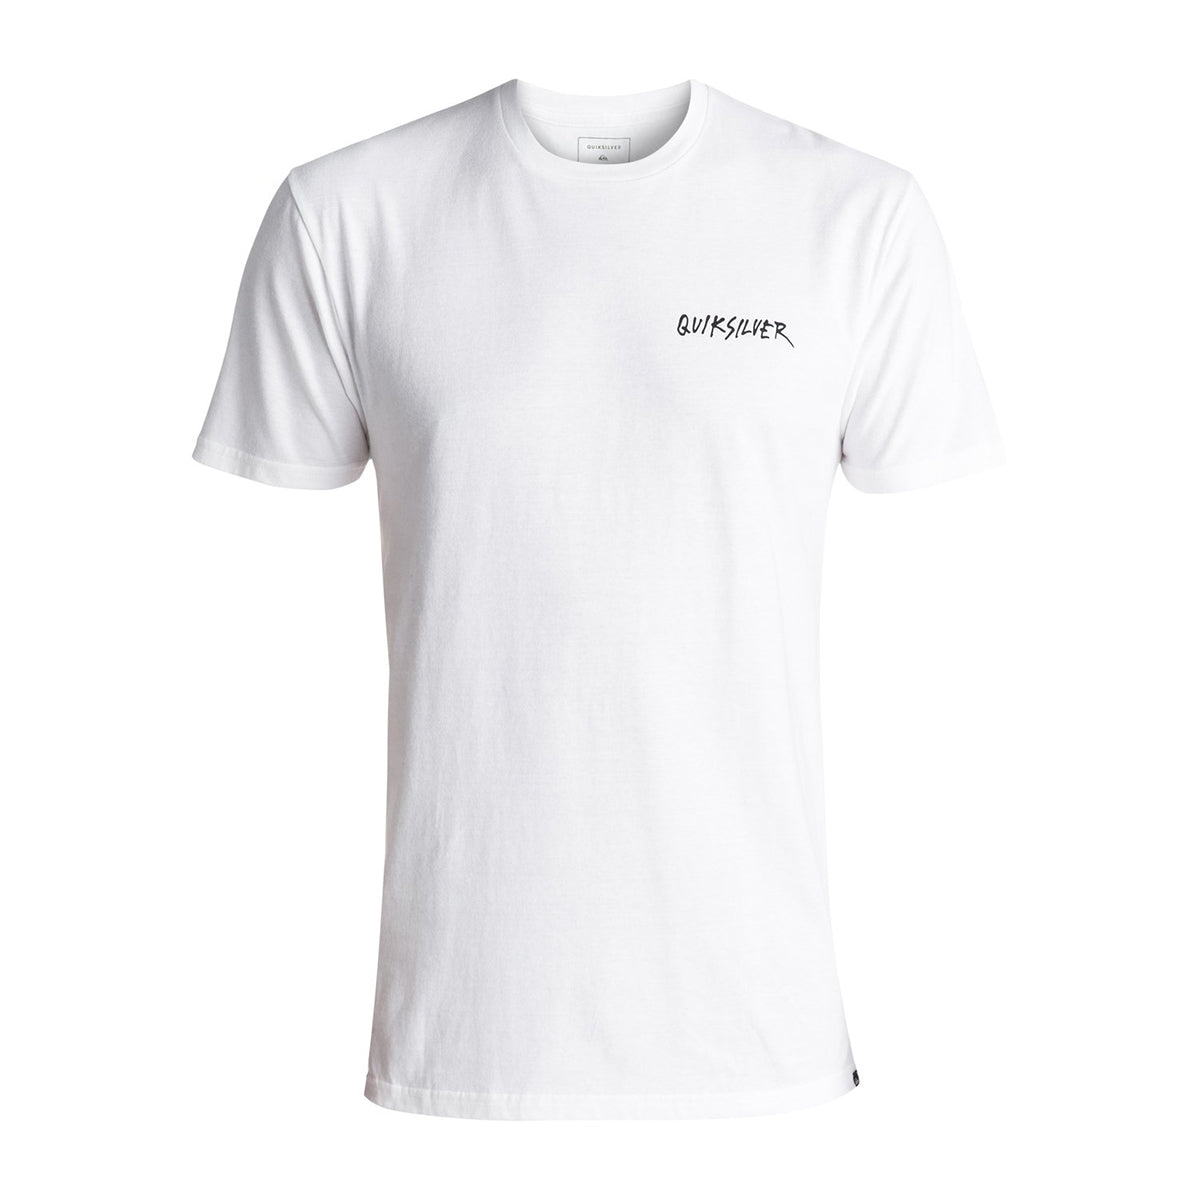 Quiksilver Peace Shout Men's Short-Sleeve Shirts - White